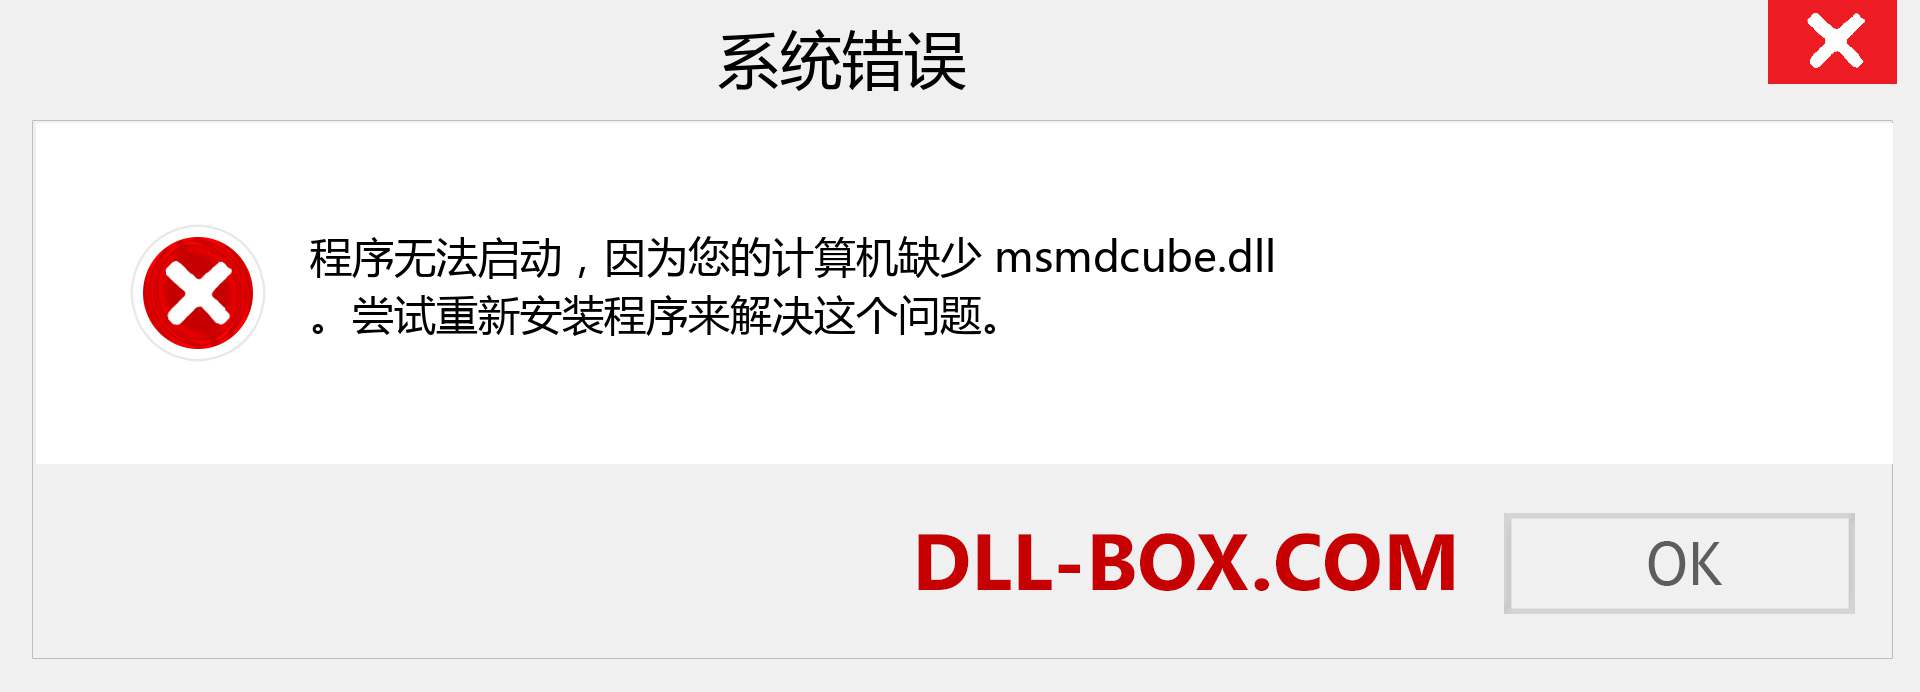 msmdcube.dll 文件丢失？。 适用于 Windows 7、8、10 的下载 - 修复 Windows、照片、图像上的 msmdcube dll 丢失错误